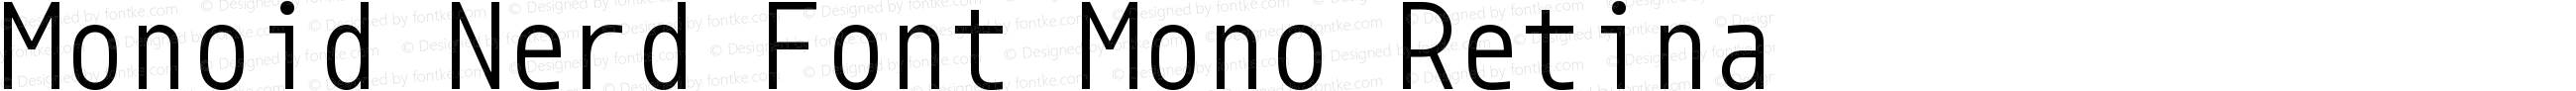 Monoid Retina Nerd Font Complete Mono